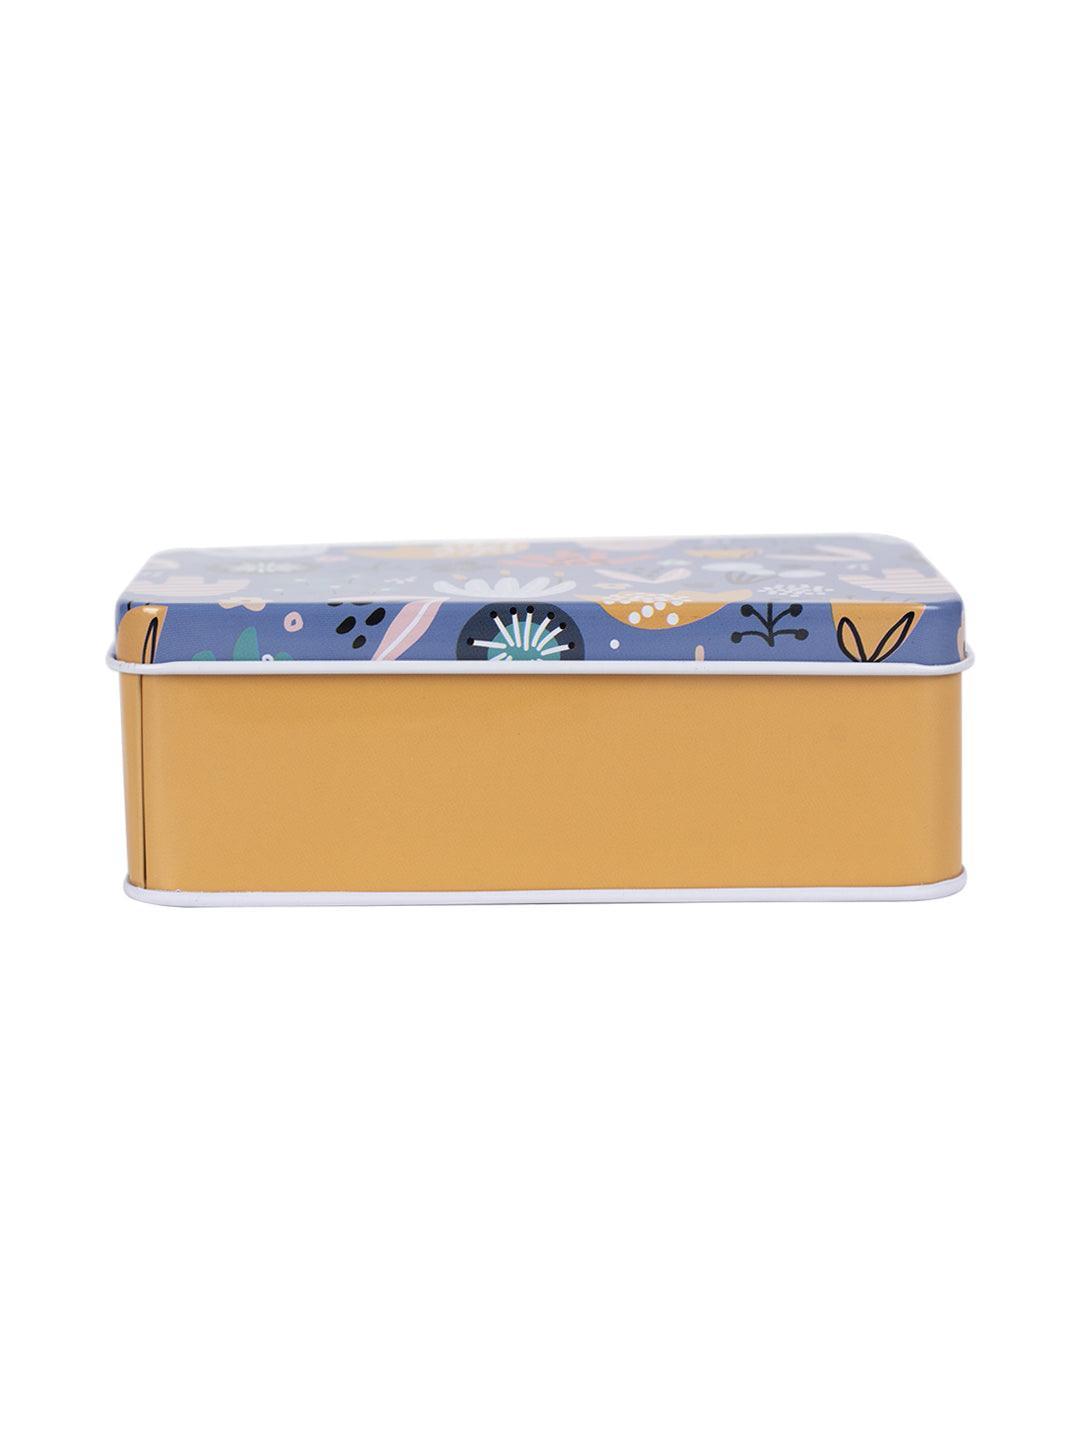 Storage Box, Animal Print, Sea Green, Tin - MARKET 99